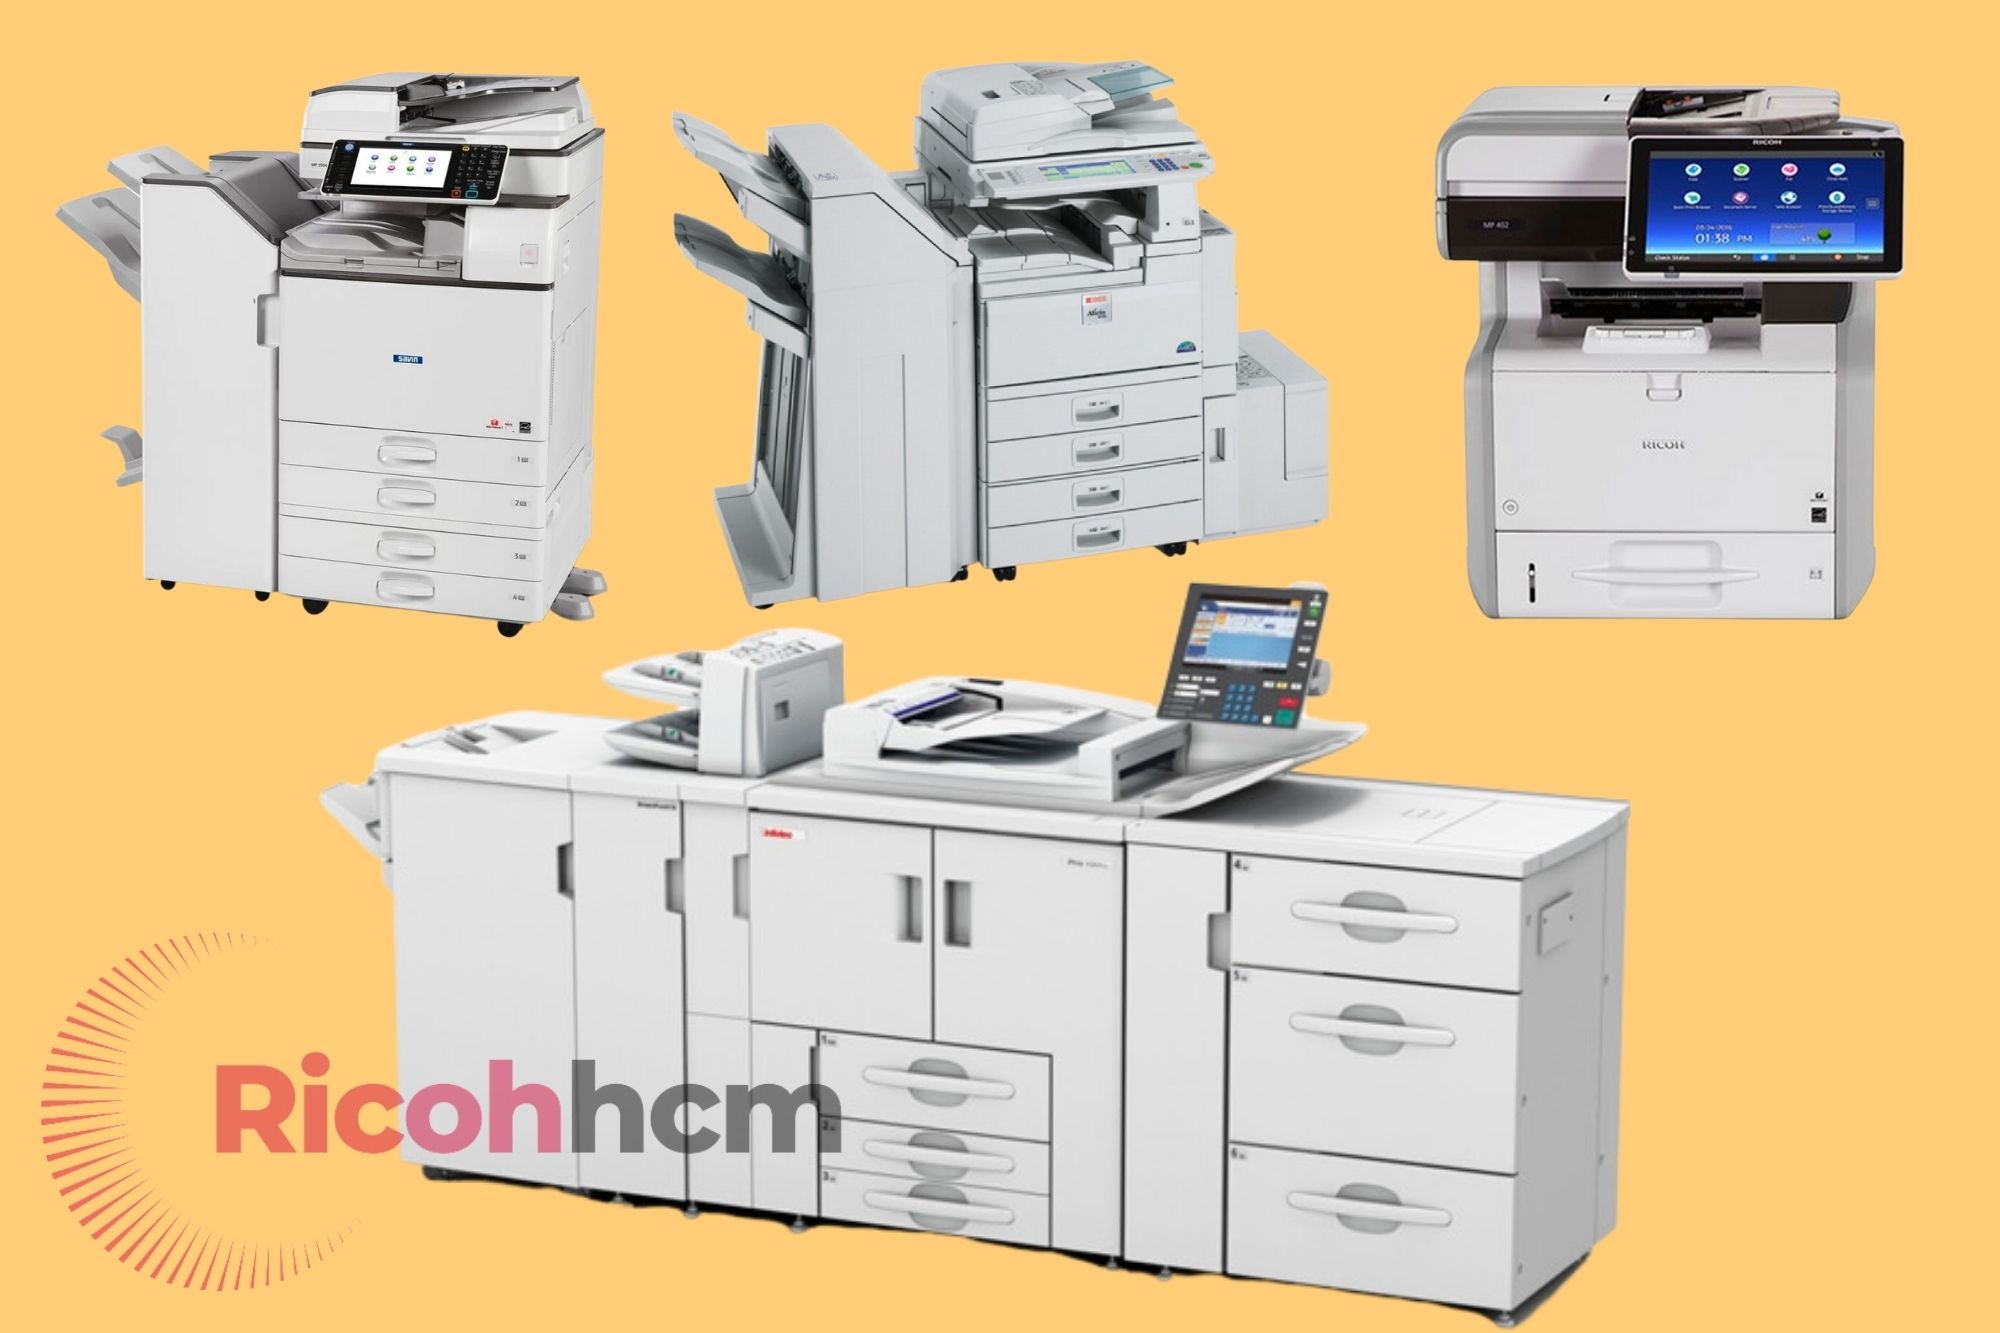 Đây là một trong những địa chỉ cho thuê máy photocopy quận Bình Thạnh với máy màu, máy photocopy đen trắng với rất nhiều model đa dạng nên mọi người có thể thoải mái lựa chọn bất cứ chiếc máy photocopy nào của thương hiệu Ricoh.